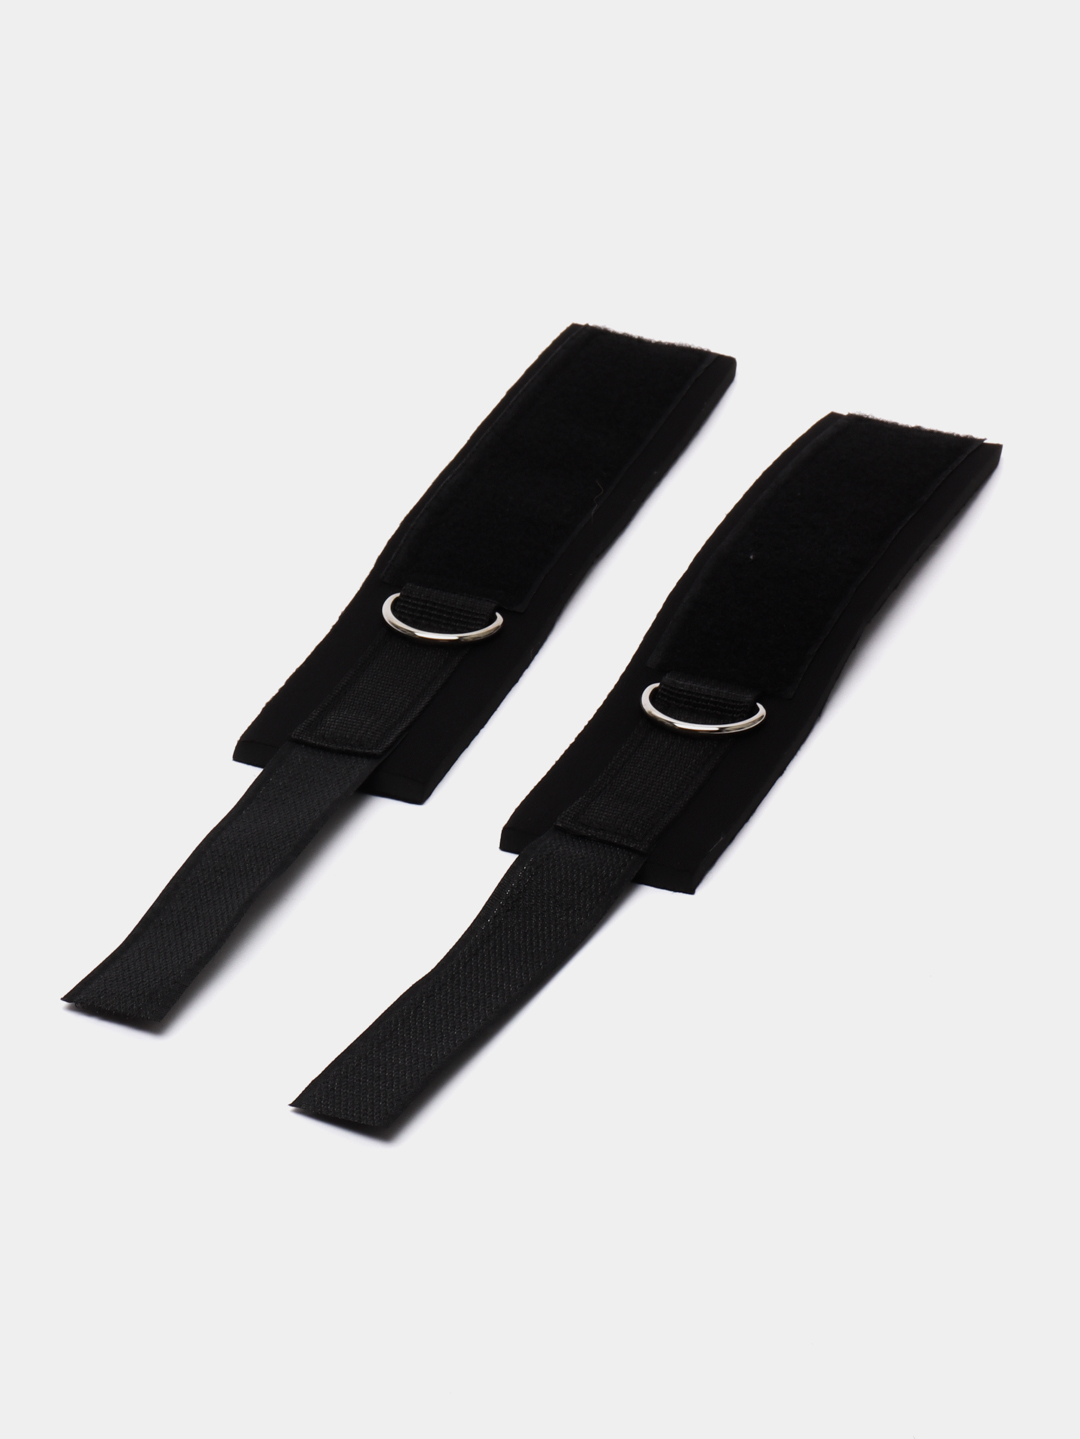 Бондаж для связывания рук и шеи с кляпом, ошейник и наручники БДСМ купить  по цене 189 ₽ в интернет-магазине KazanExpress